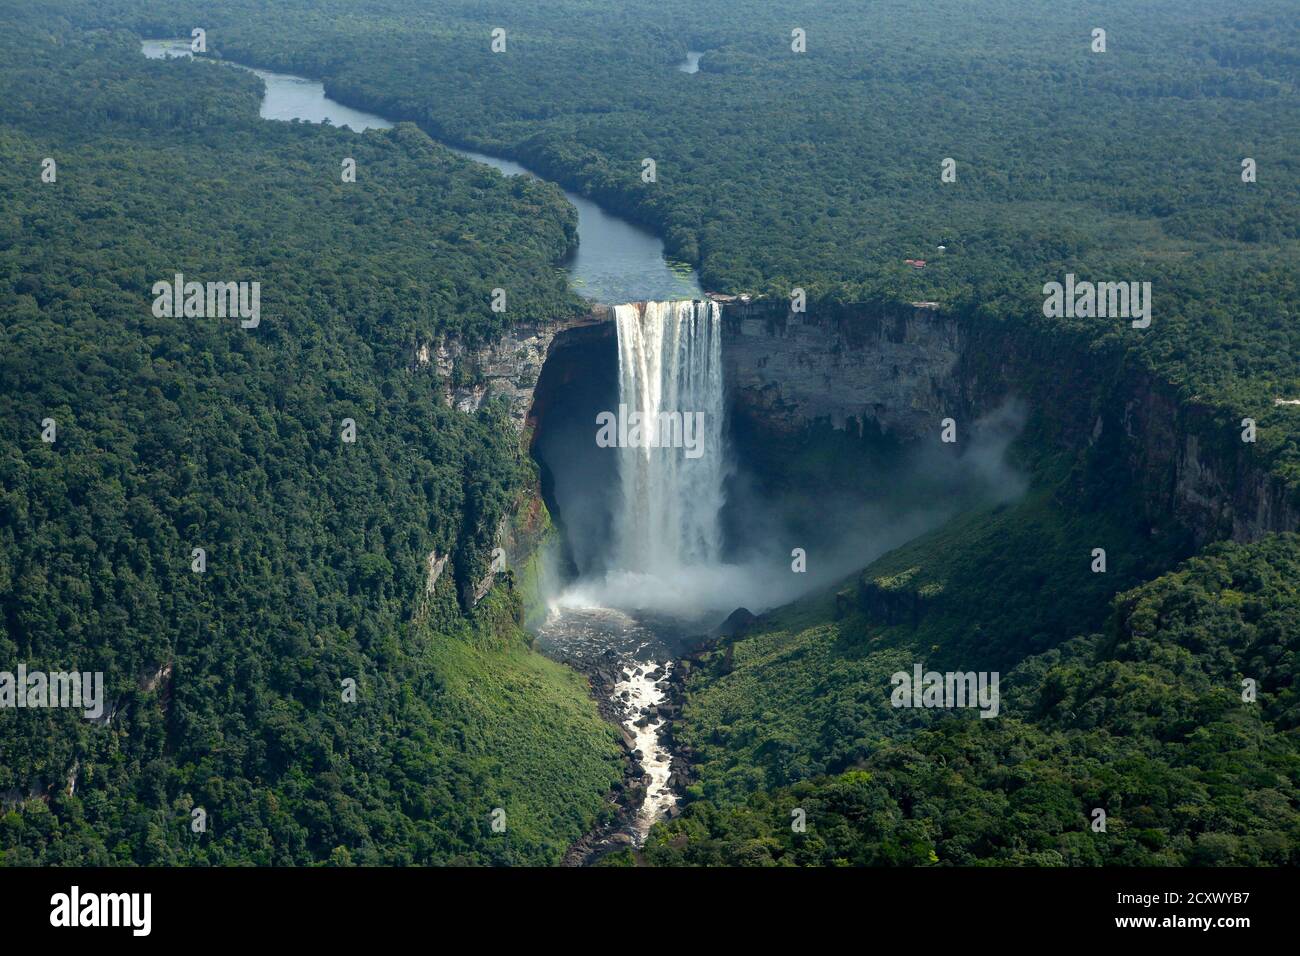 Une vue aérienne des chutes Kaicoeur dans le sud du Guyana le 10 avril 2011. Située sur les rivières Pitaro, la chute Kaieteur est considérée comme l'une des plus puissantes au monde en combinant la hauteur du grand plongeon de 741 pieds (226 mètres), avec le grand volume d'eau. Photo prise en avril 10. REUTERS/Andrea de Silva (GUYANA - Tags: ENVIRONNEMENT) Banque D'Images